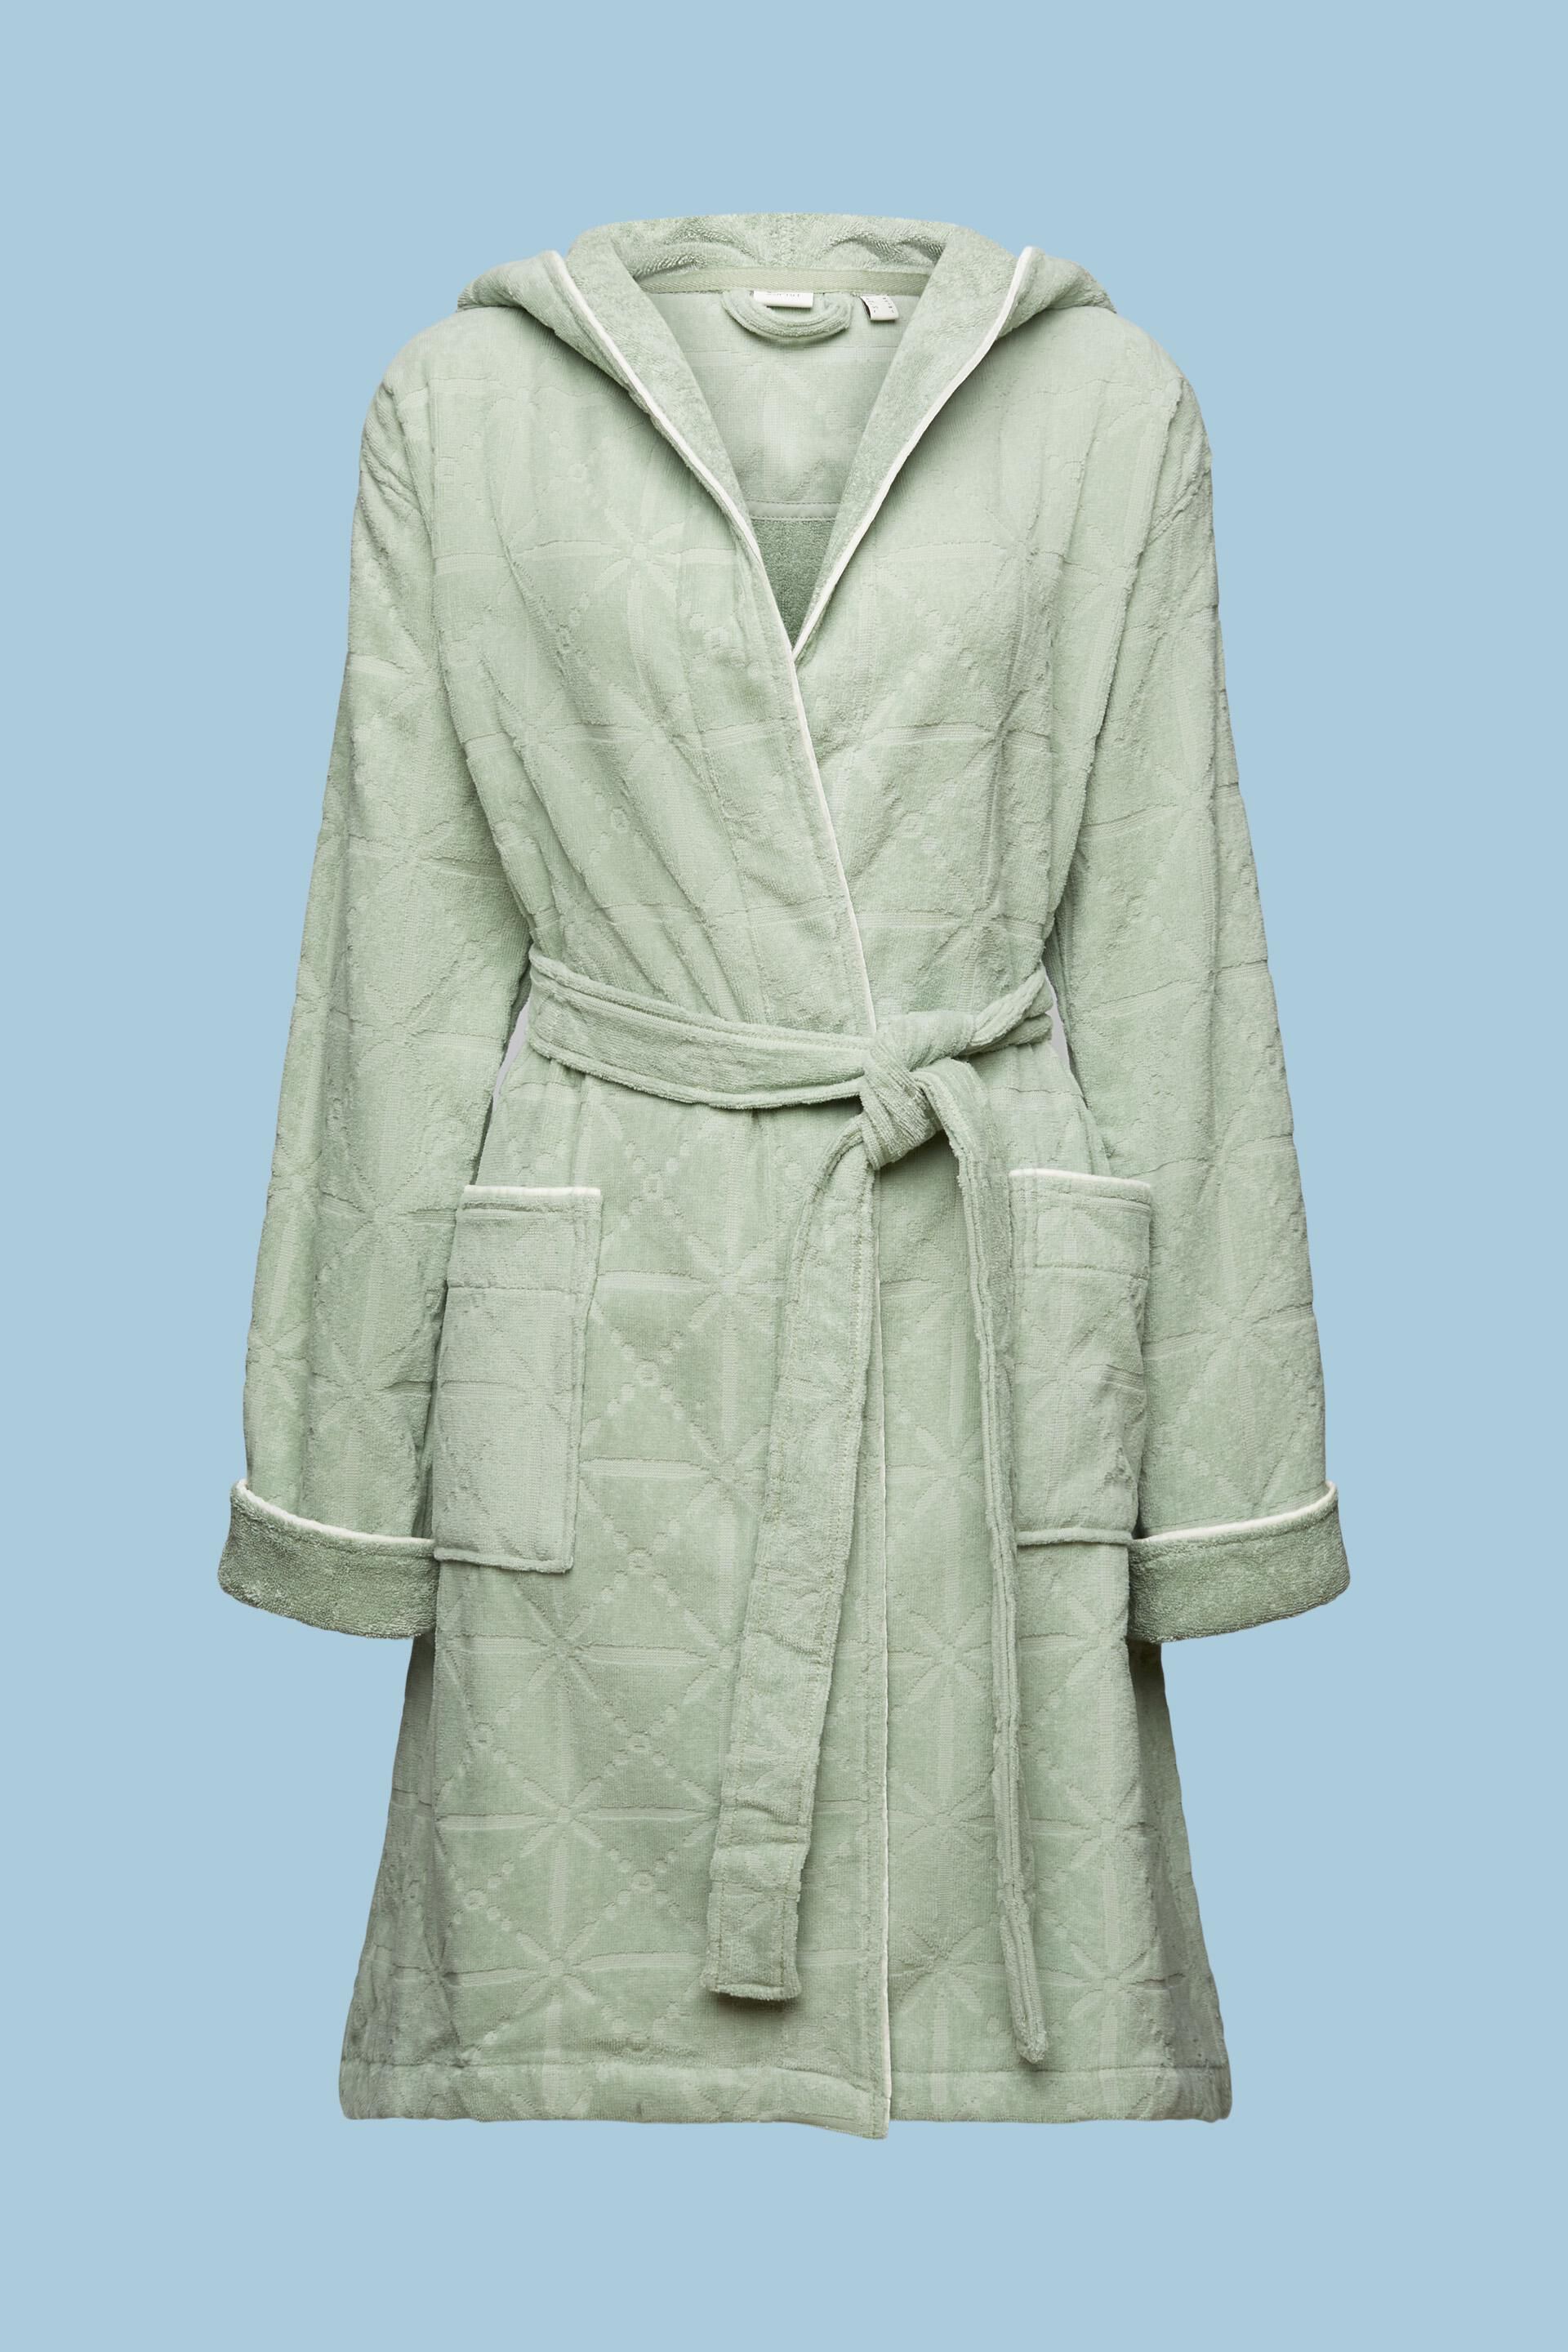 Bath robe Mens & Womens 100% Terry Cotton Shawl Collar Bathrobe Dressing  Gown | eBay